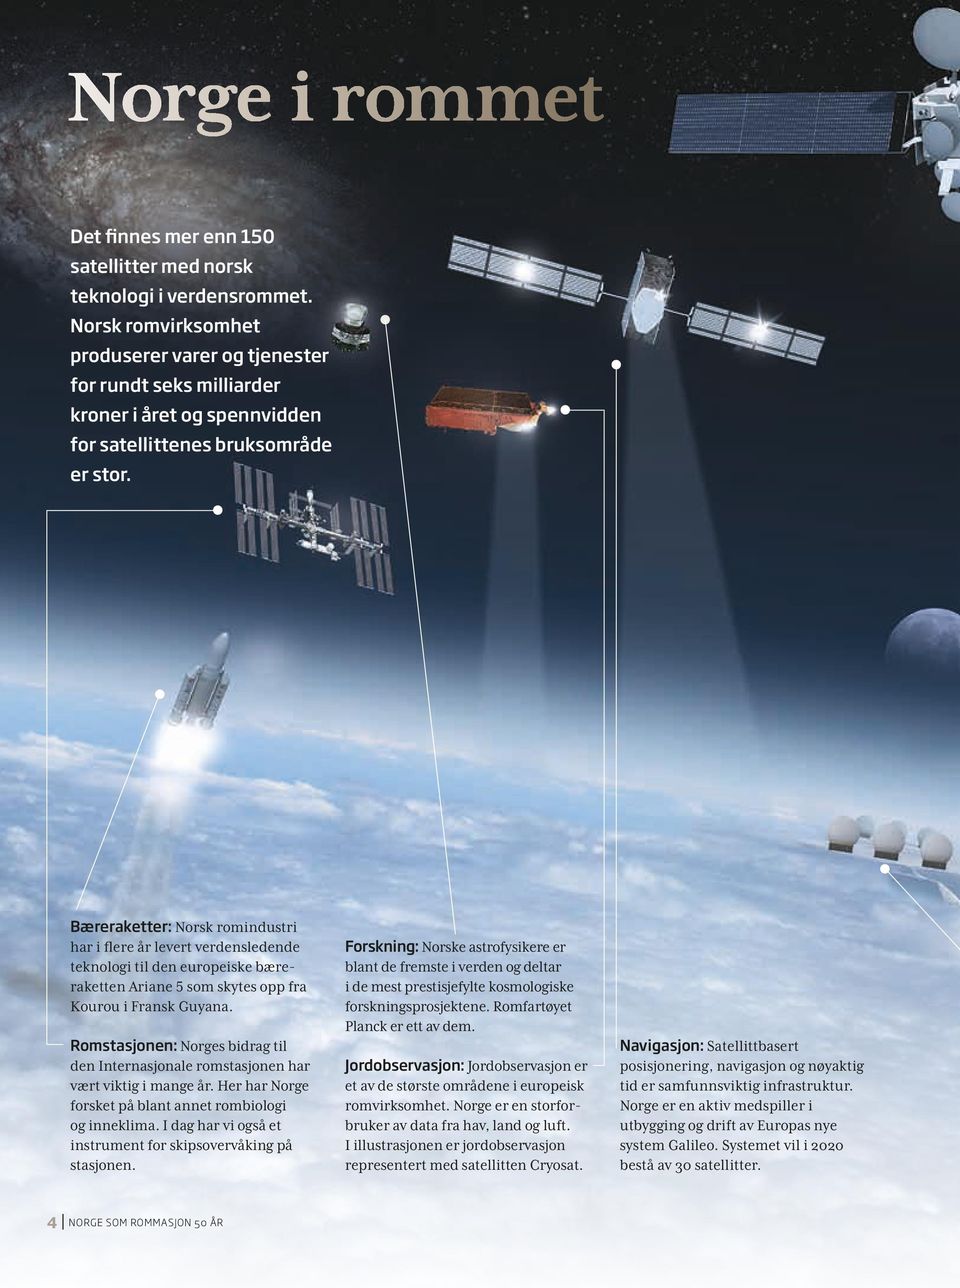 Bæreraketter: Norsk romindustri har i flere år levert verdensledende teknologi til den europeiske bæreraketten Ariane 5 som skytes opp fra Kourou i Fransk Guyana.